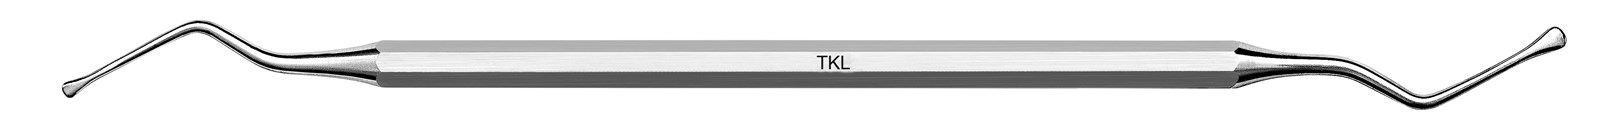 Nůž pro tunelovou techniku - TKL, ADEP šedý